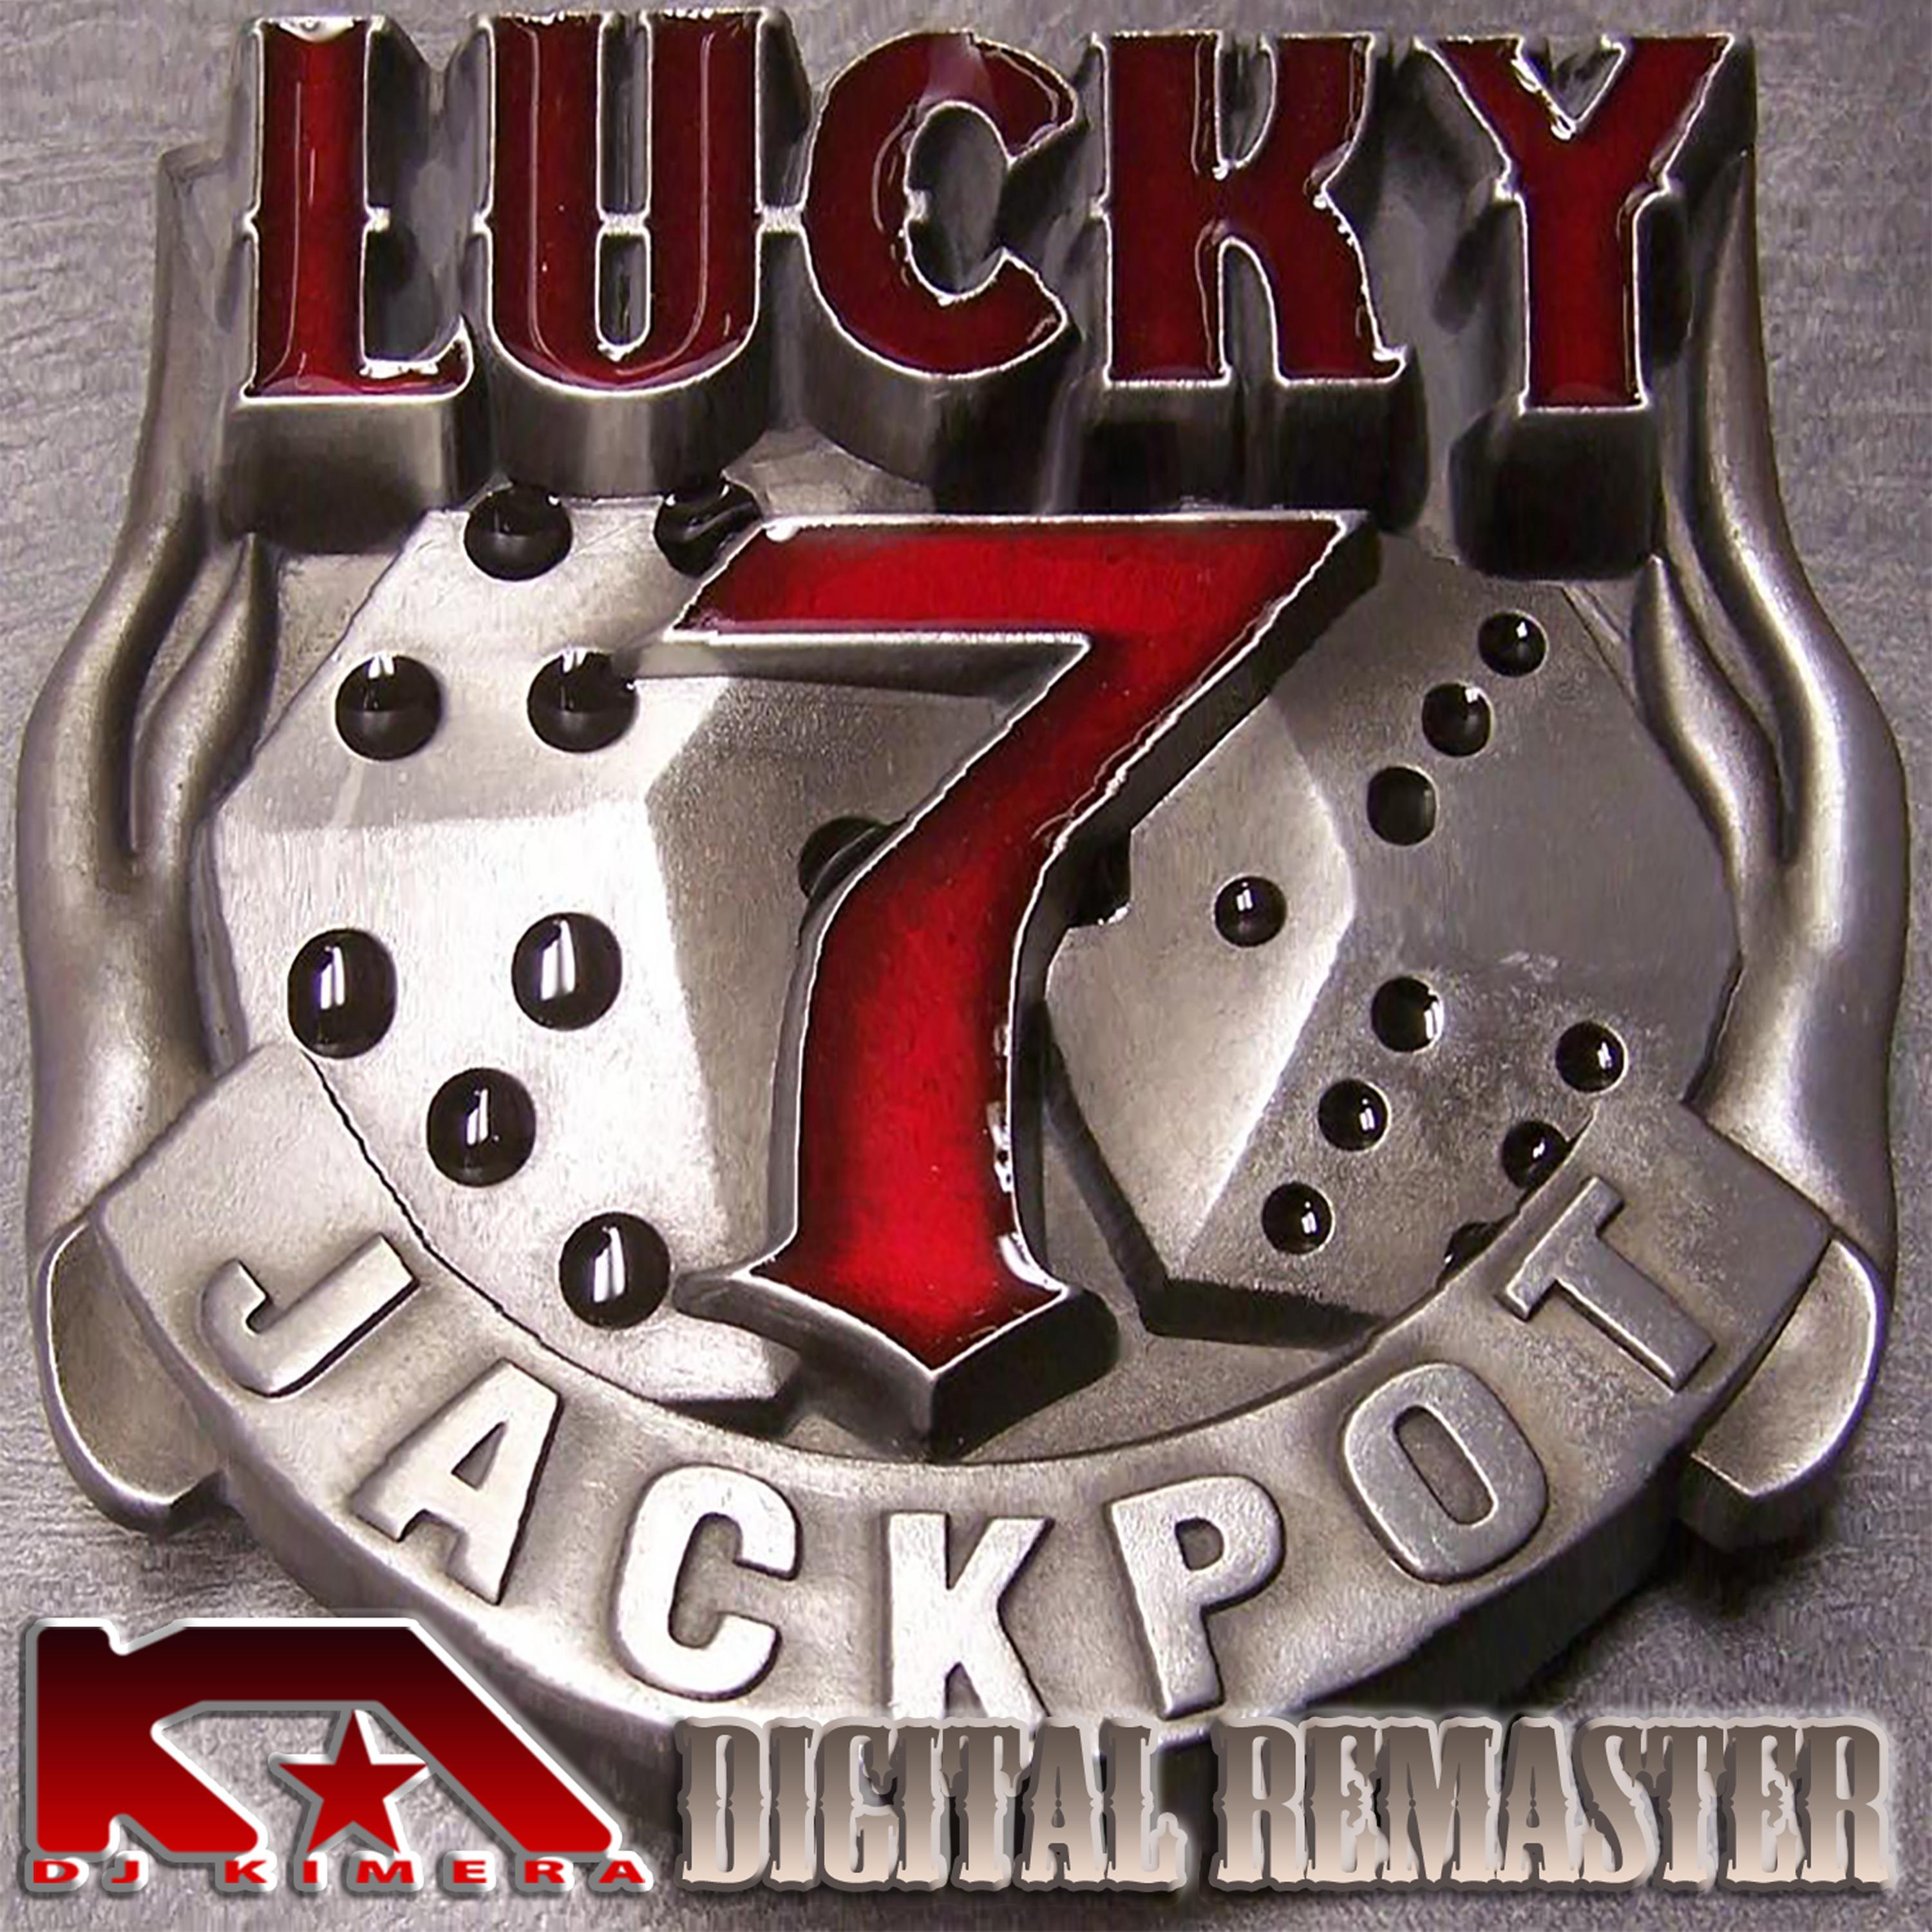 LUCKY 7 JACKPOT (Digital remaster)